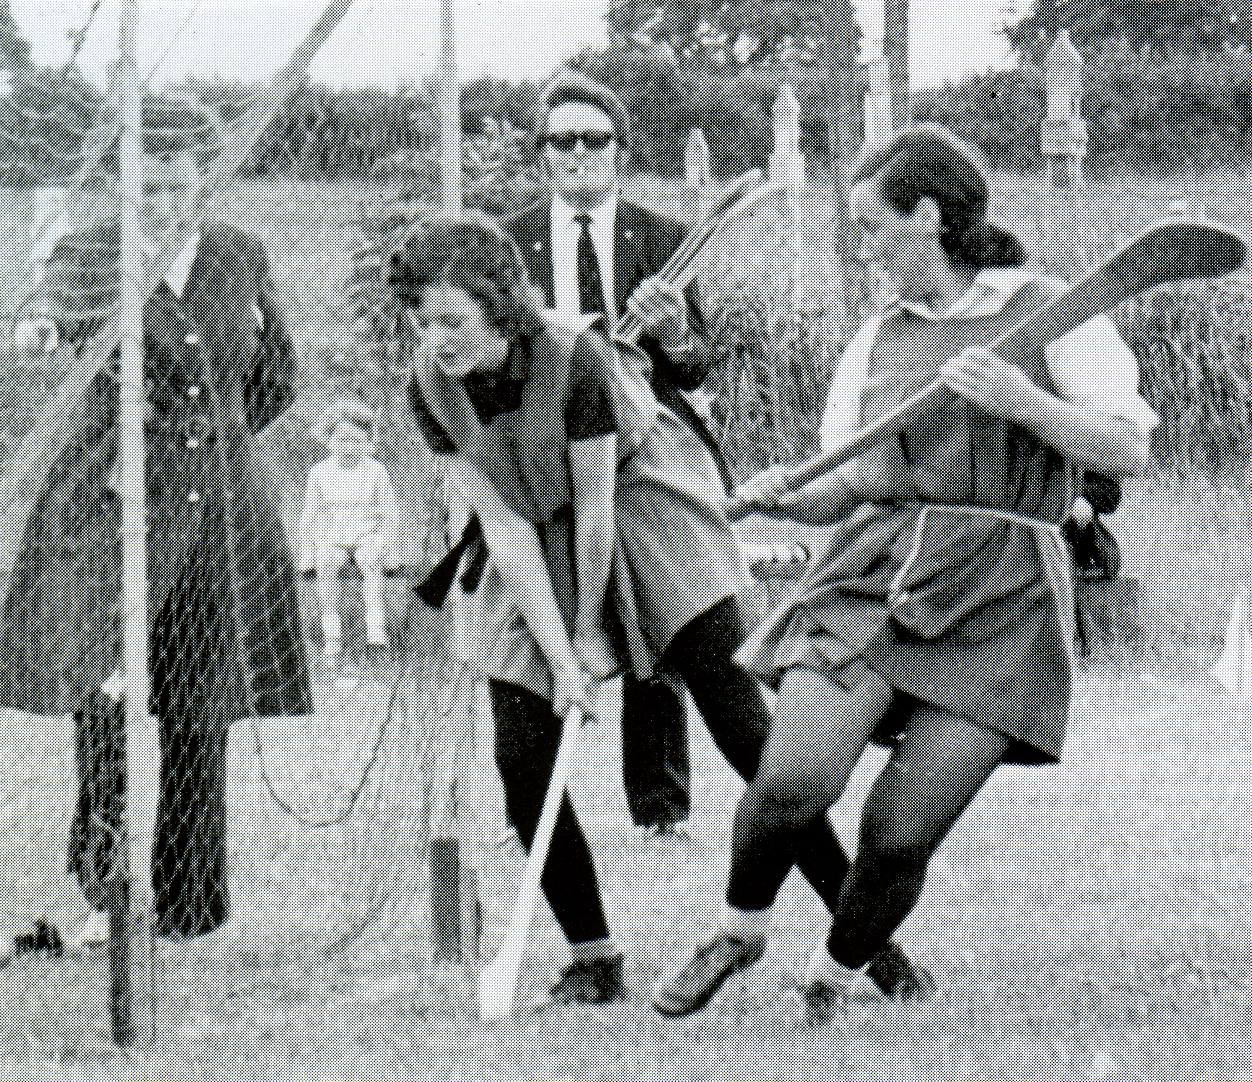 Women playing a hurling match